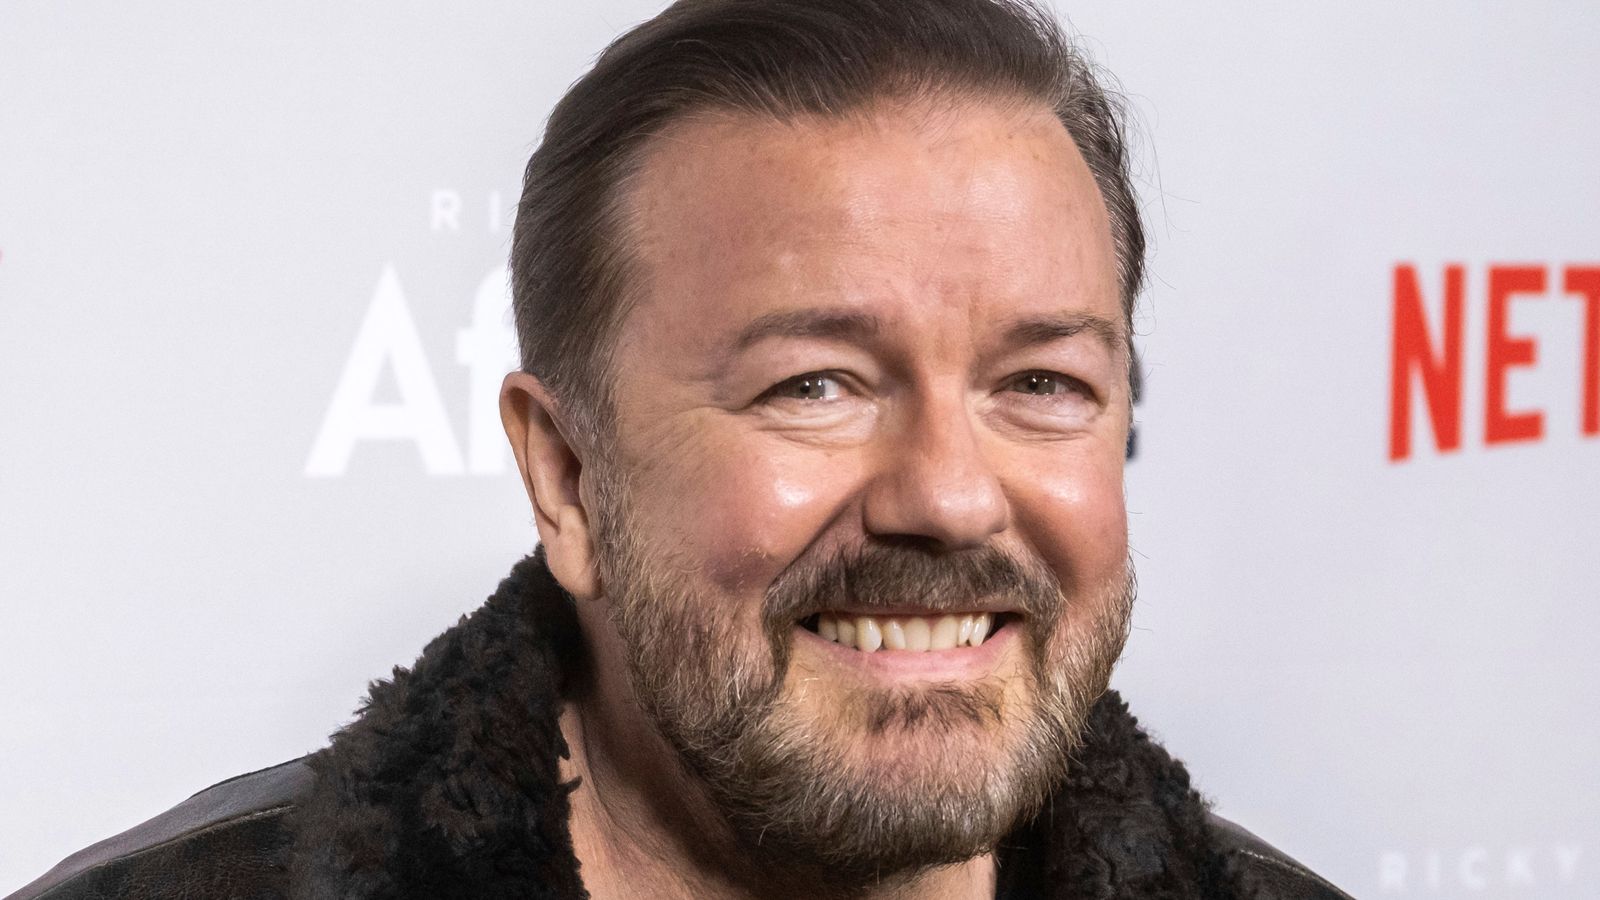 Ricky Gervais се шегува „roll on death“, след като се разболя по време на турне – и разкрива странен симптом